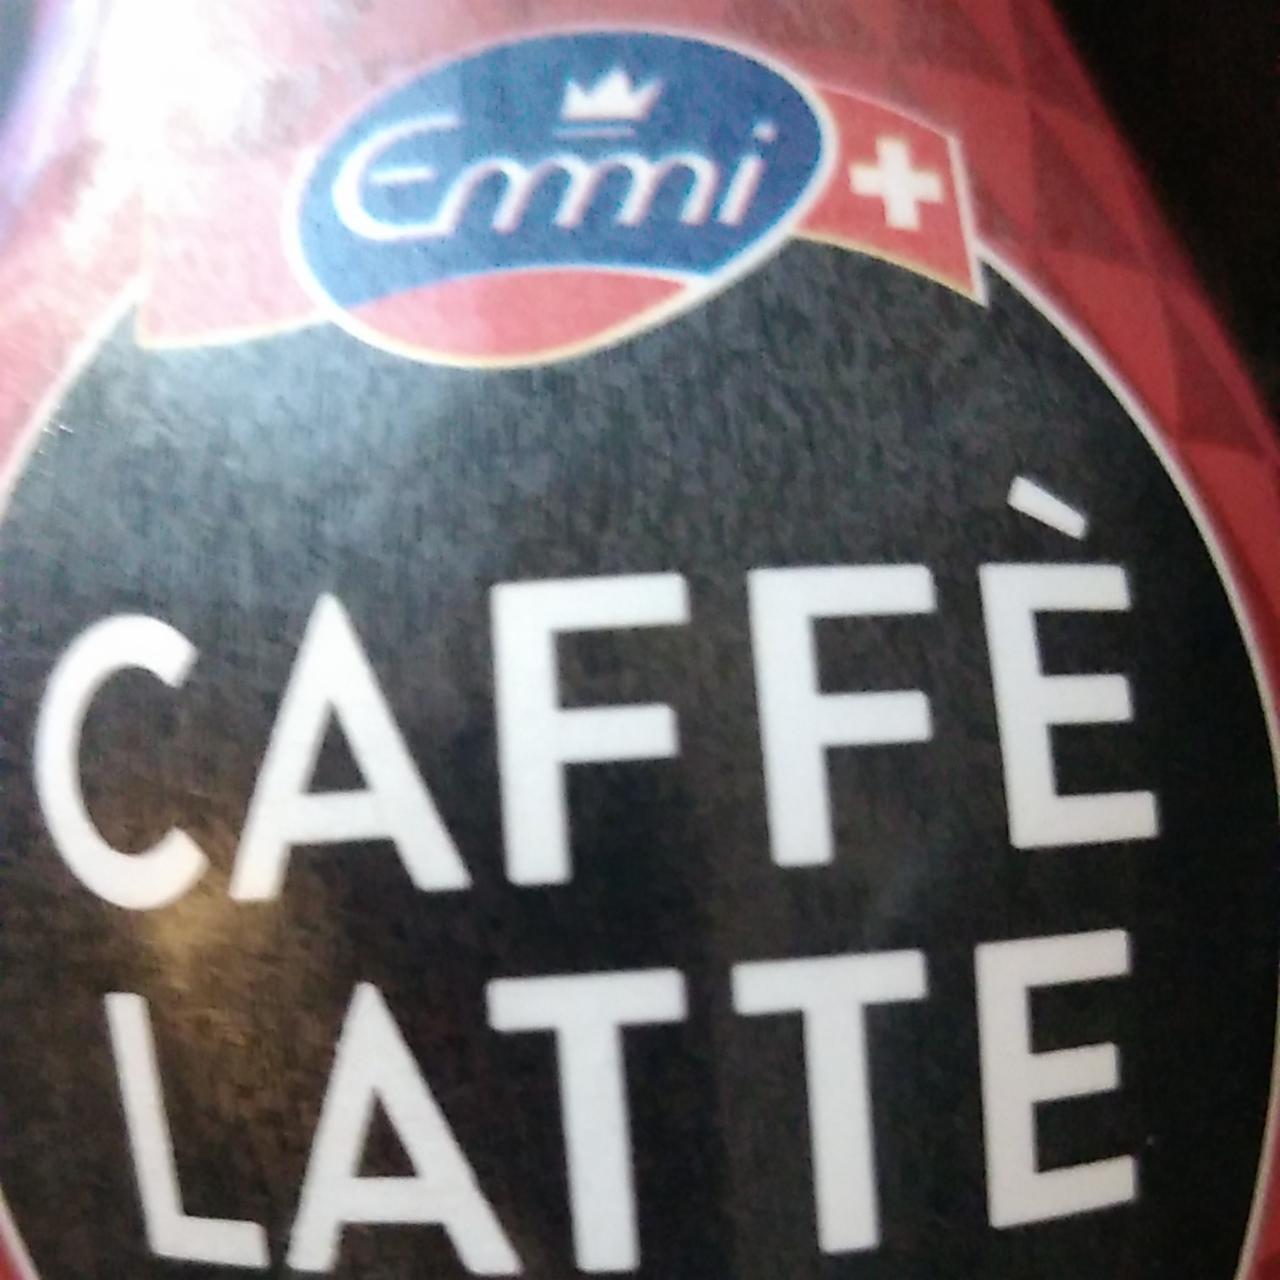 Fotografie - Caffè Latte Emmi